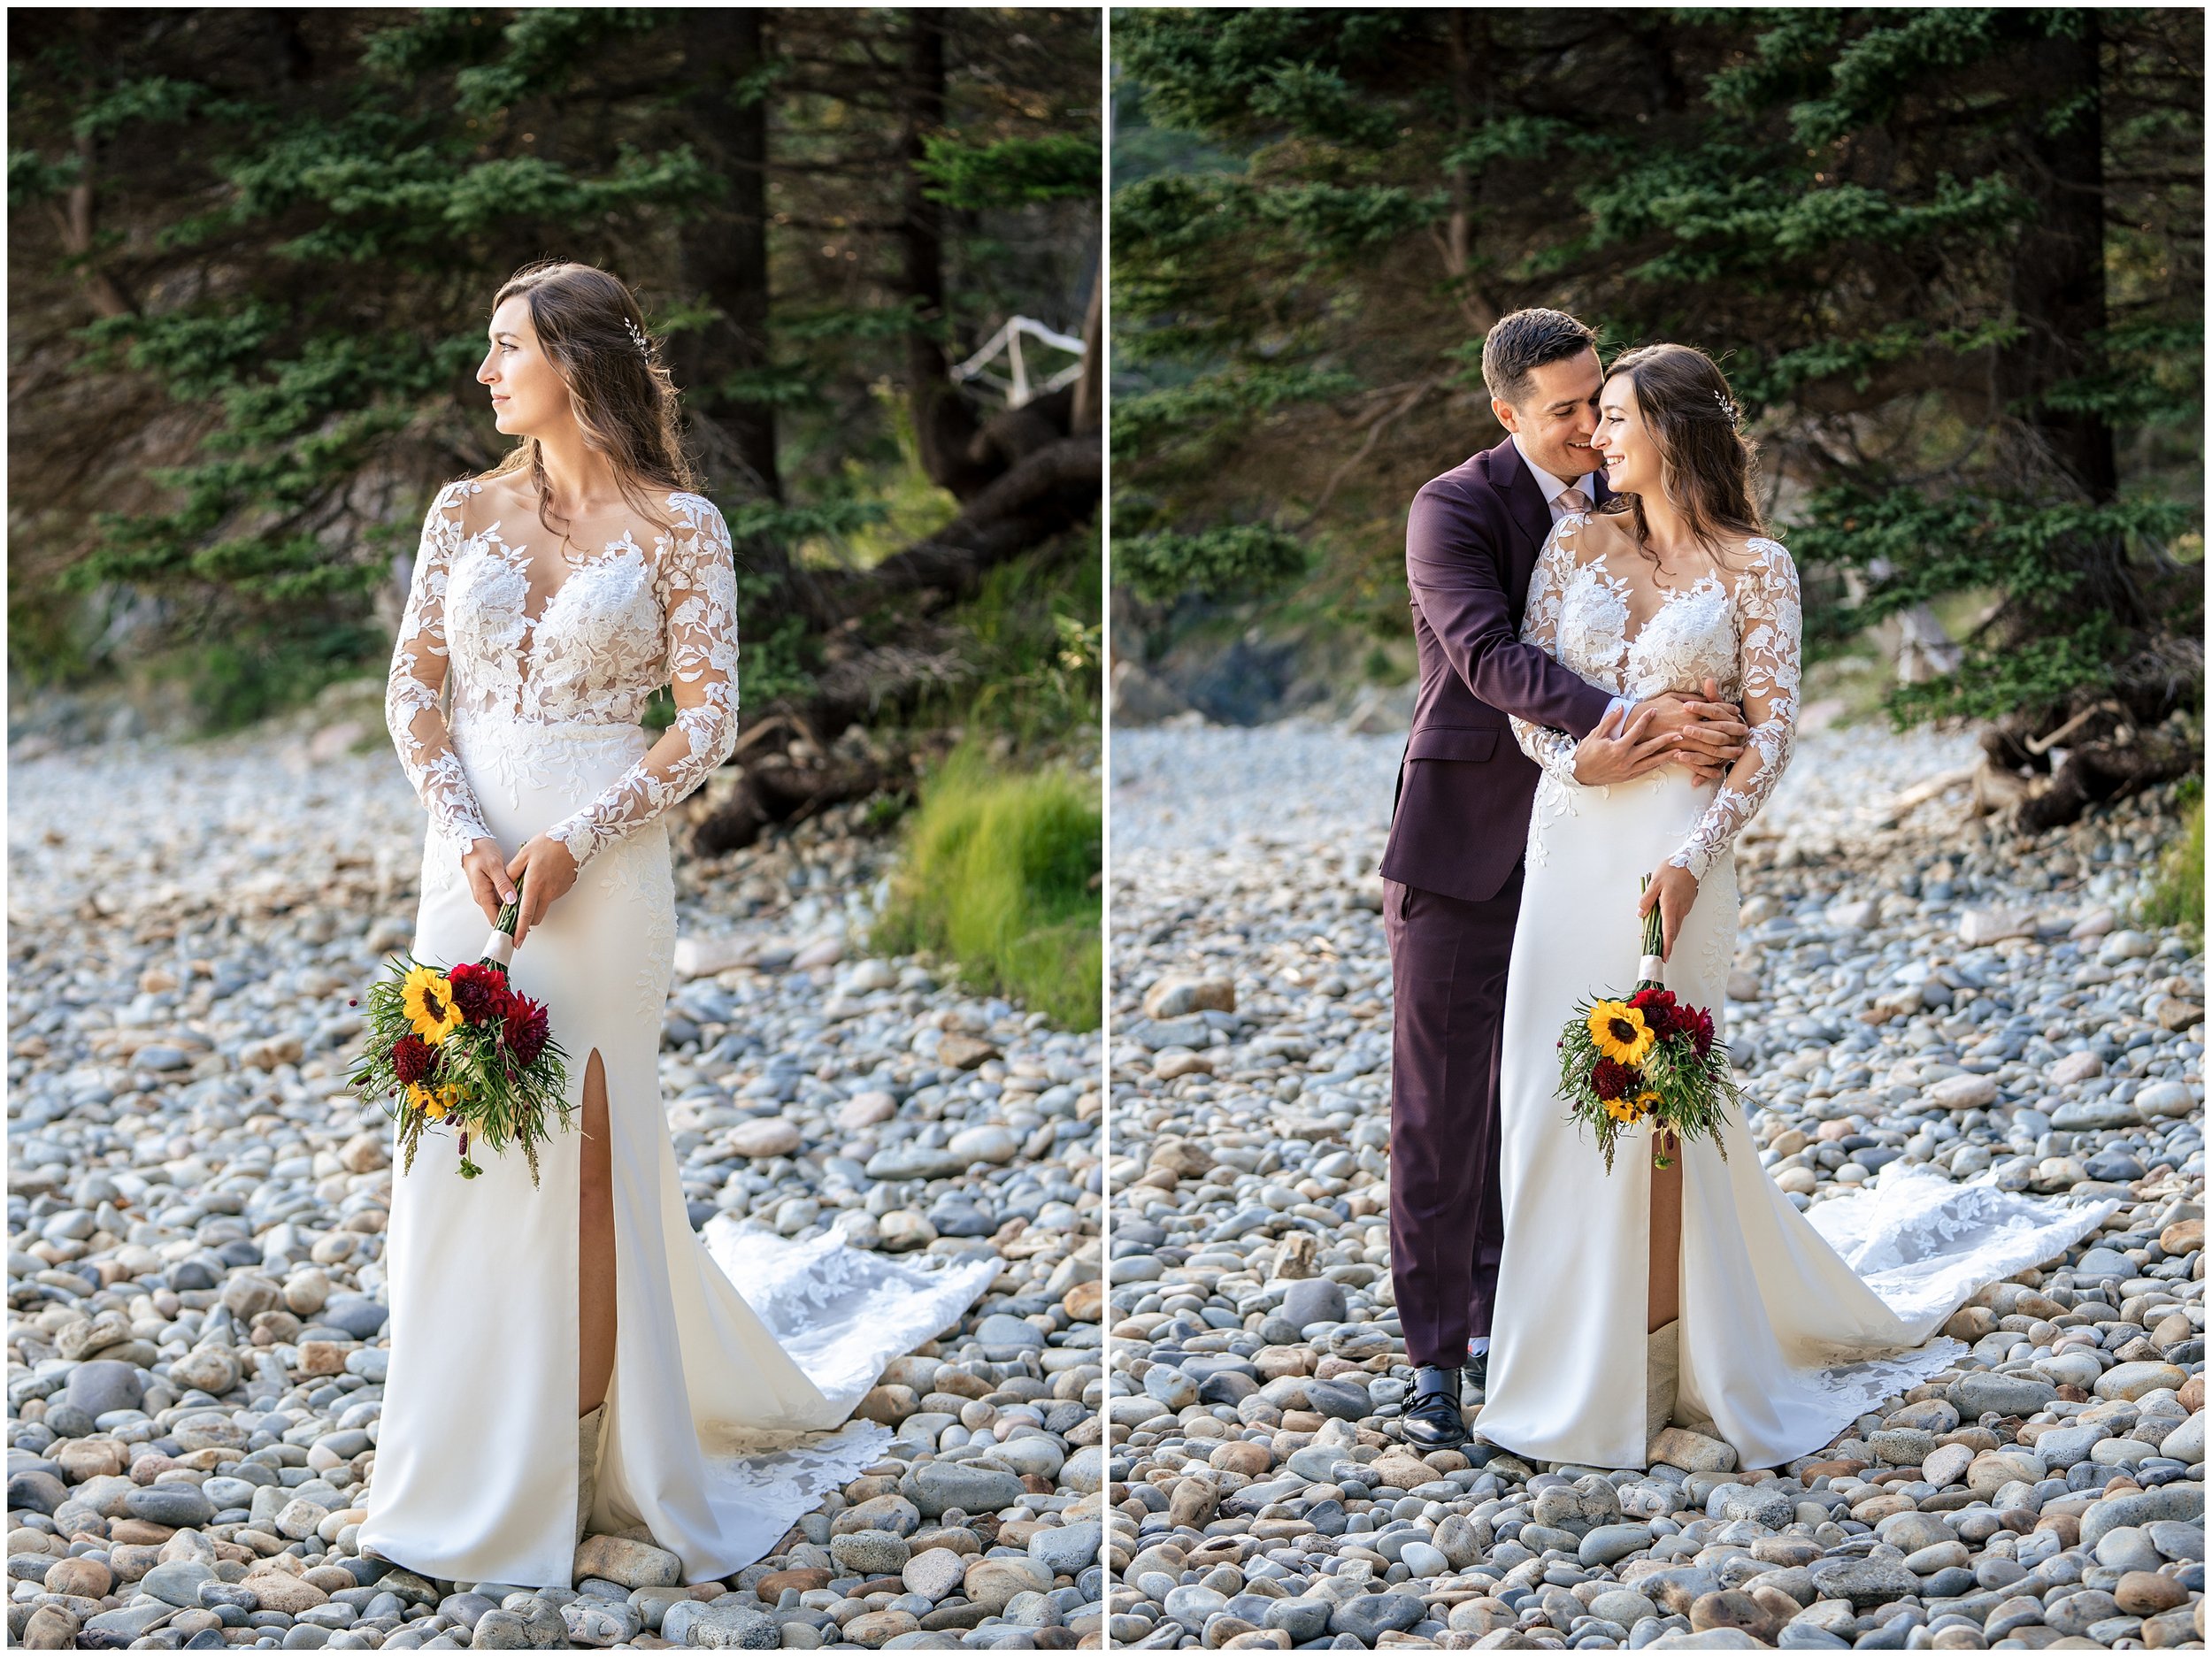 Acadia National Park Wedding Photographers, Bar Harbor Wedding Photographers, Two Adventurous Souls- 082423_0047.jpg